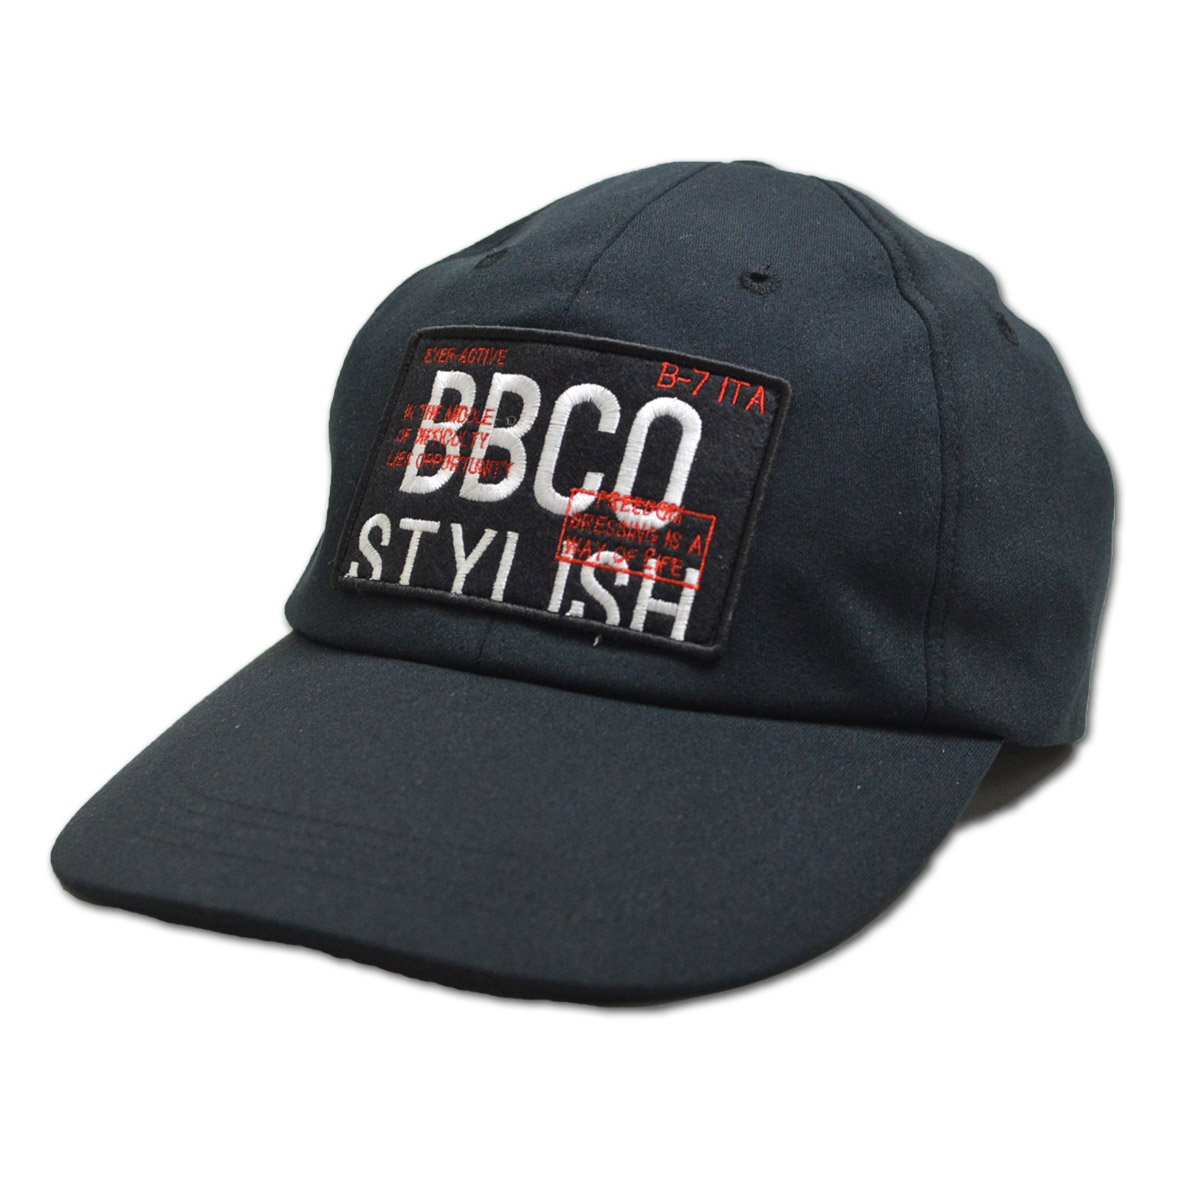 BBCO ビビコ キャップ帽子 メンズ 黒 白 紺 M L LL 25-0101-01